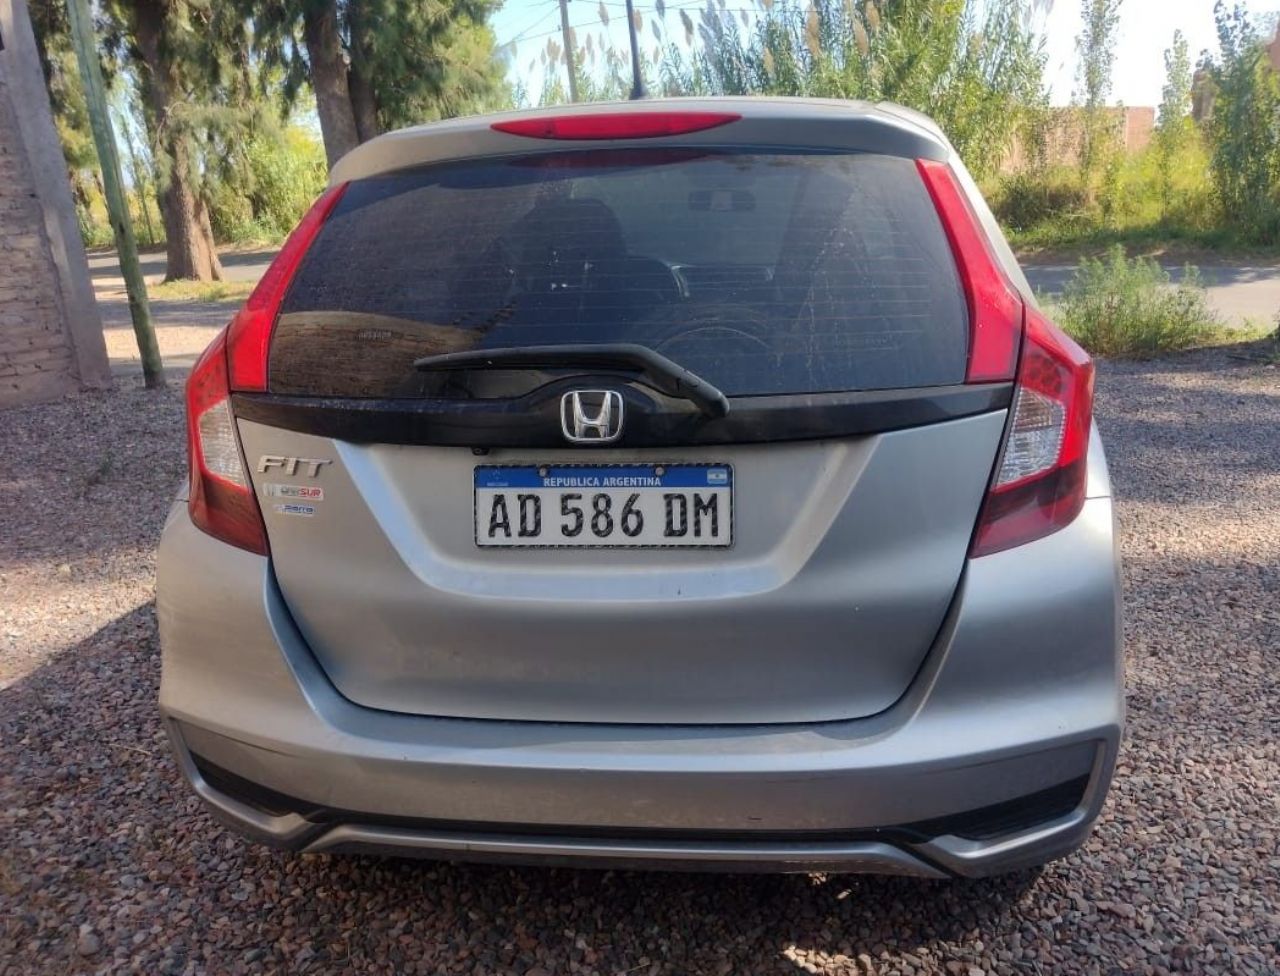 Honda Fit Usado en Mendoza, deRuedas